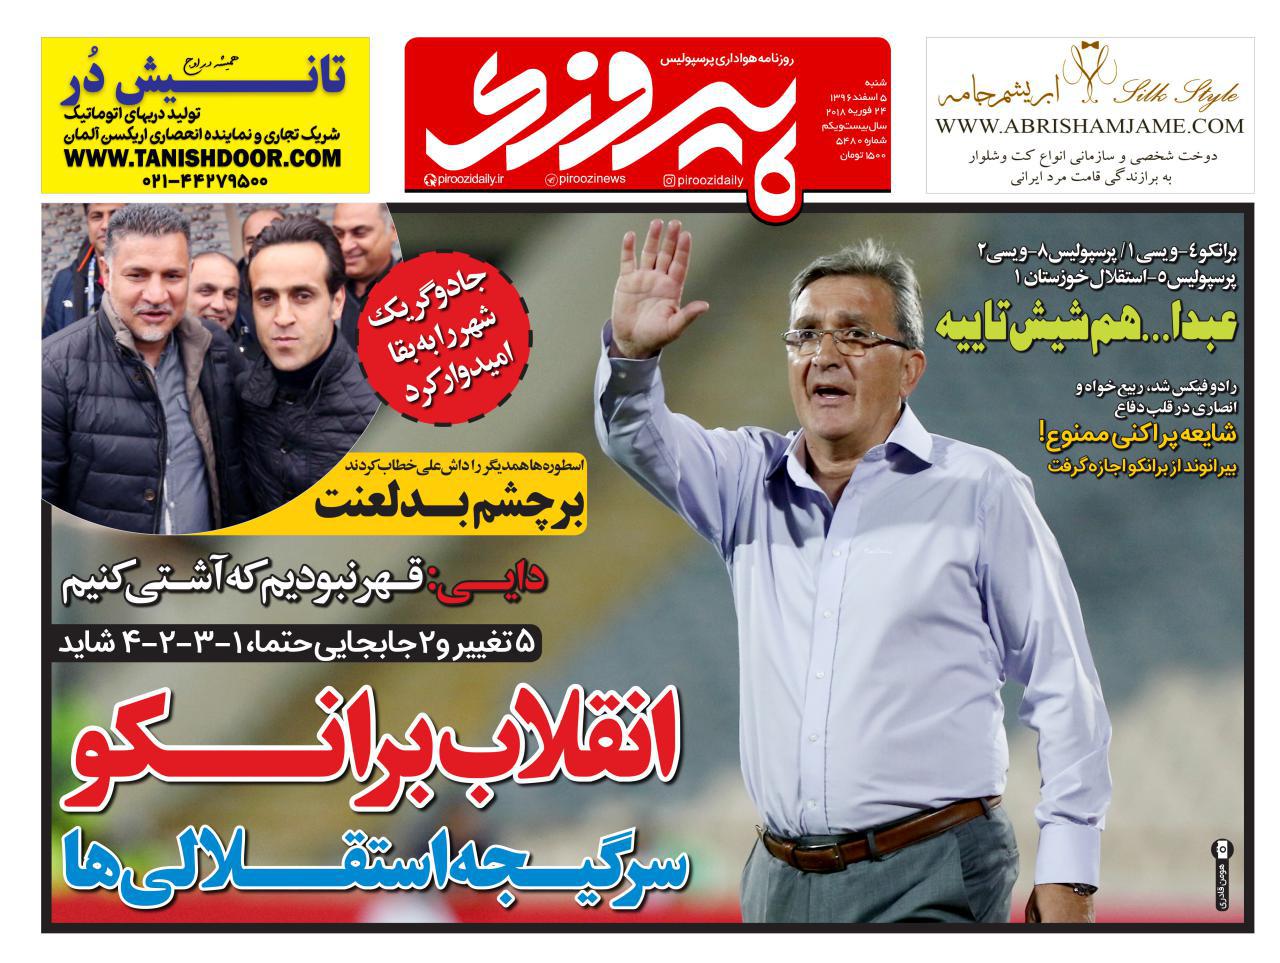 جلد روزنامه پیروزی، 5 اسفند 96